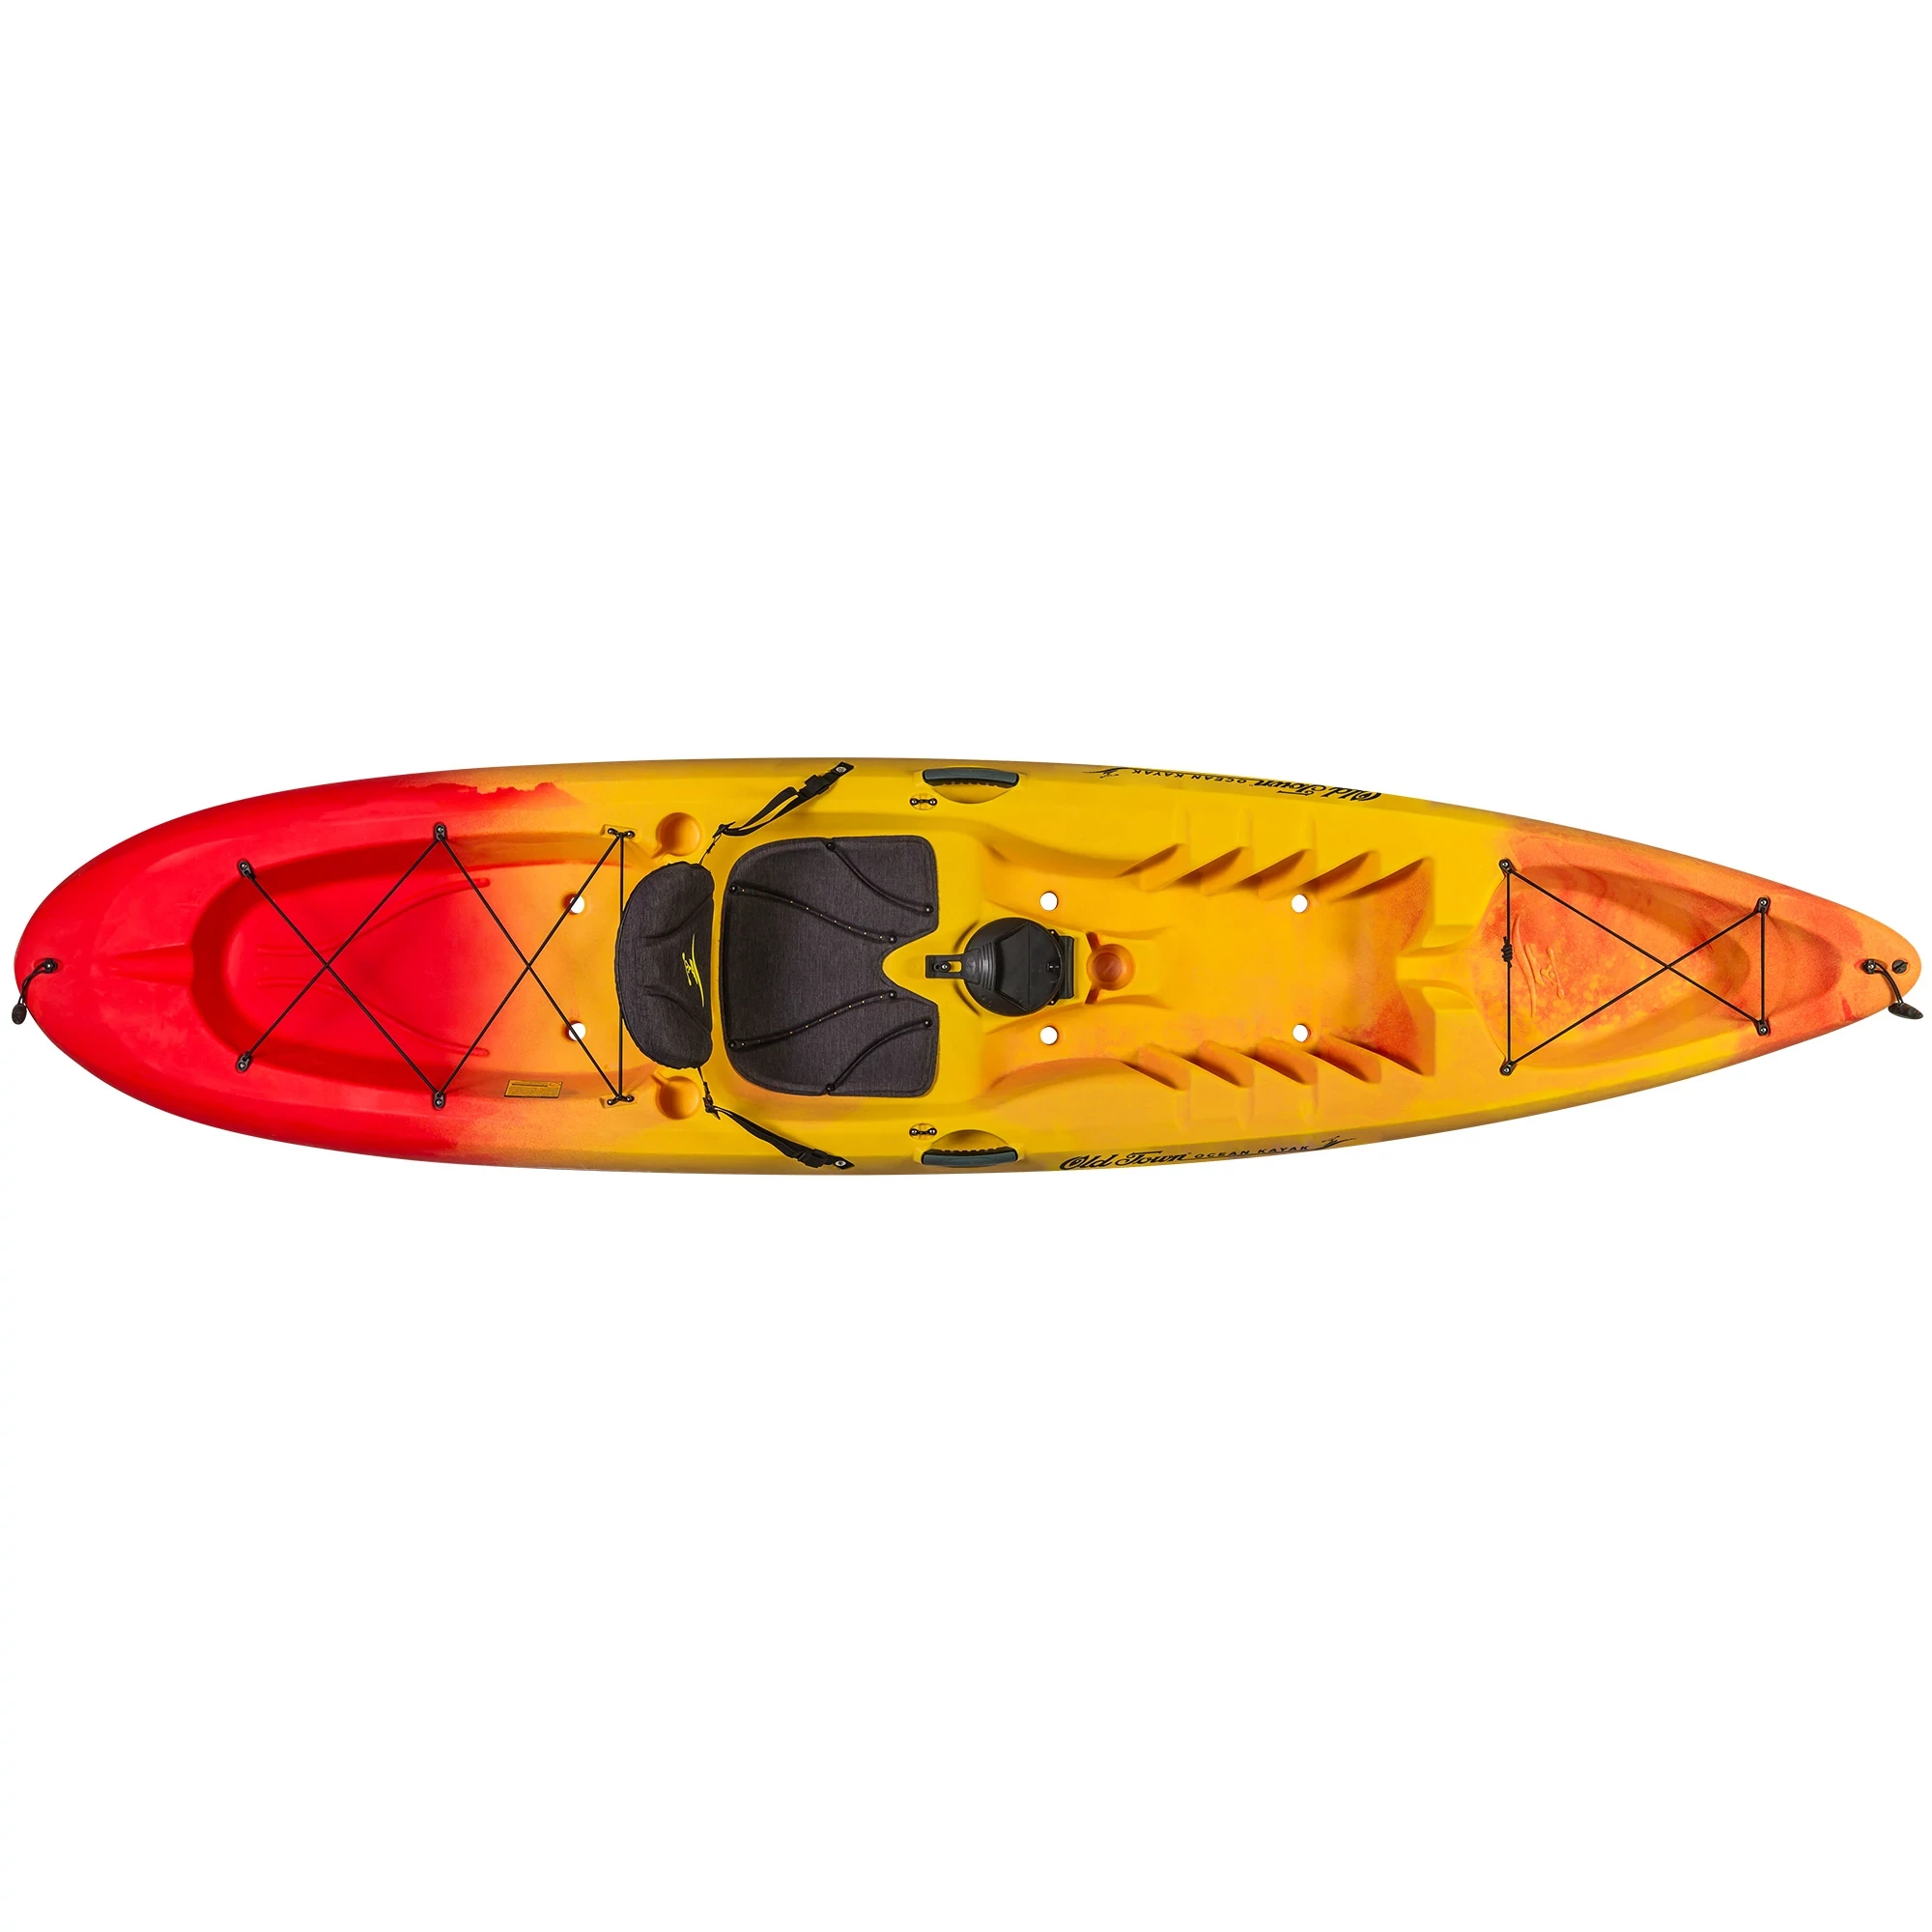 Ocean Kayak Malibu 11.5 - Sunrise - Top View